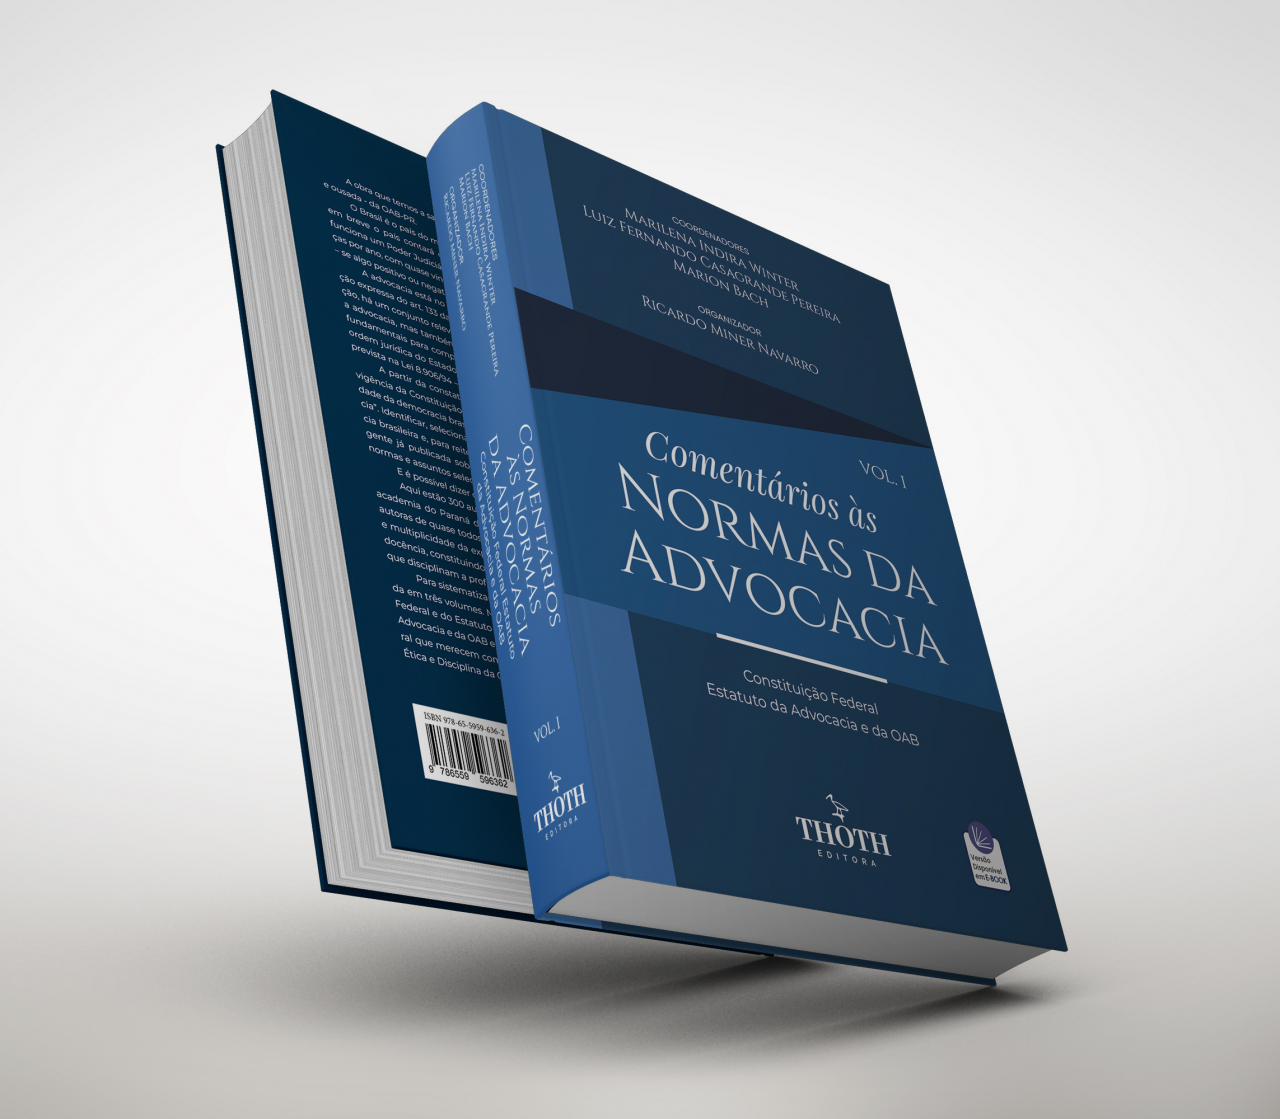 Editora Thoth - Comentários às Normas da Advocacia: Constituição Federal,  Estatuto da Advocacia e OAB – Vol. 1